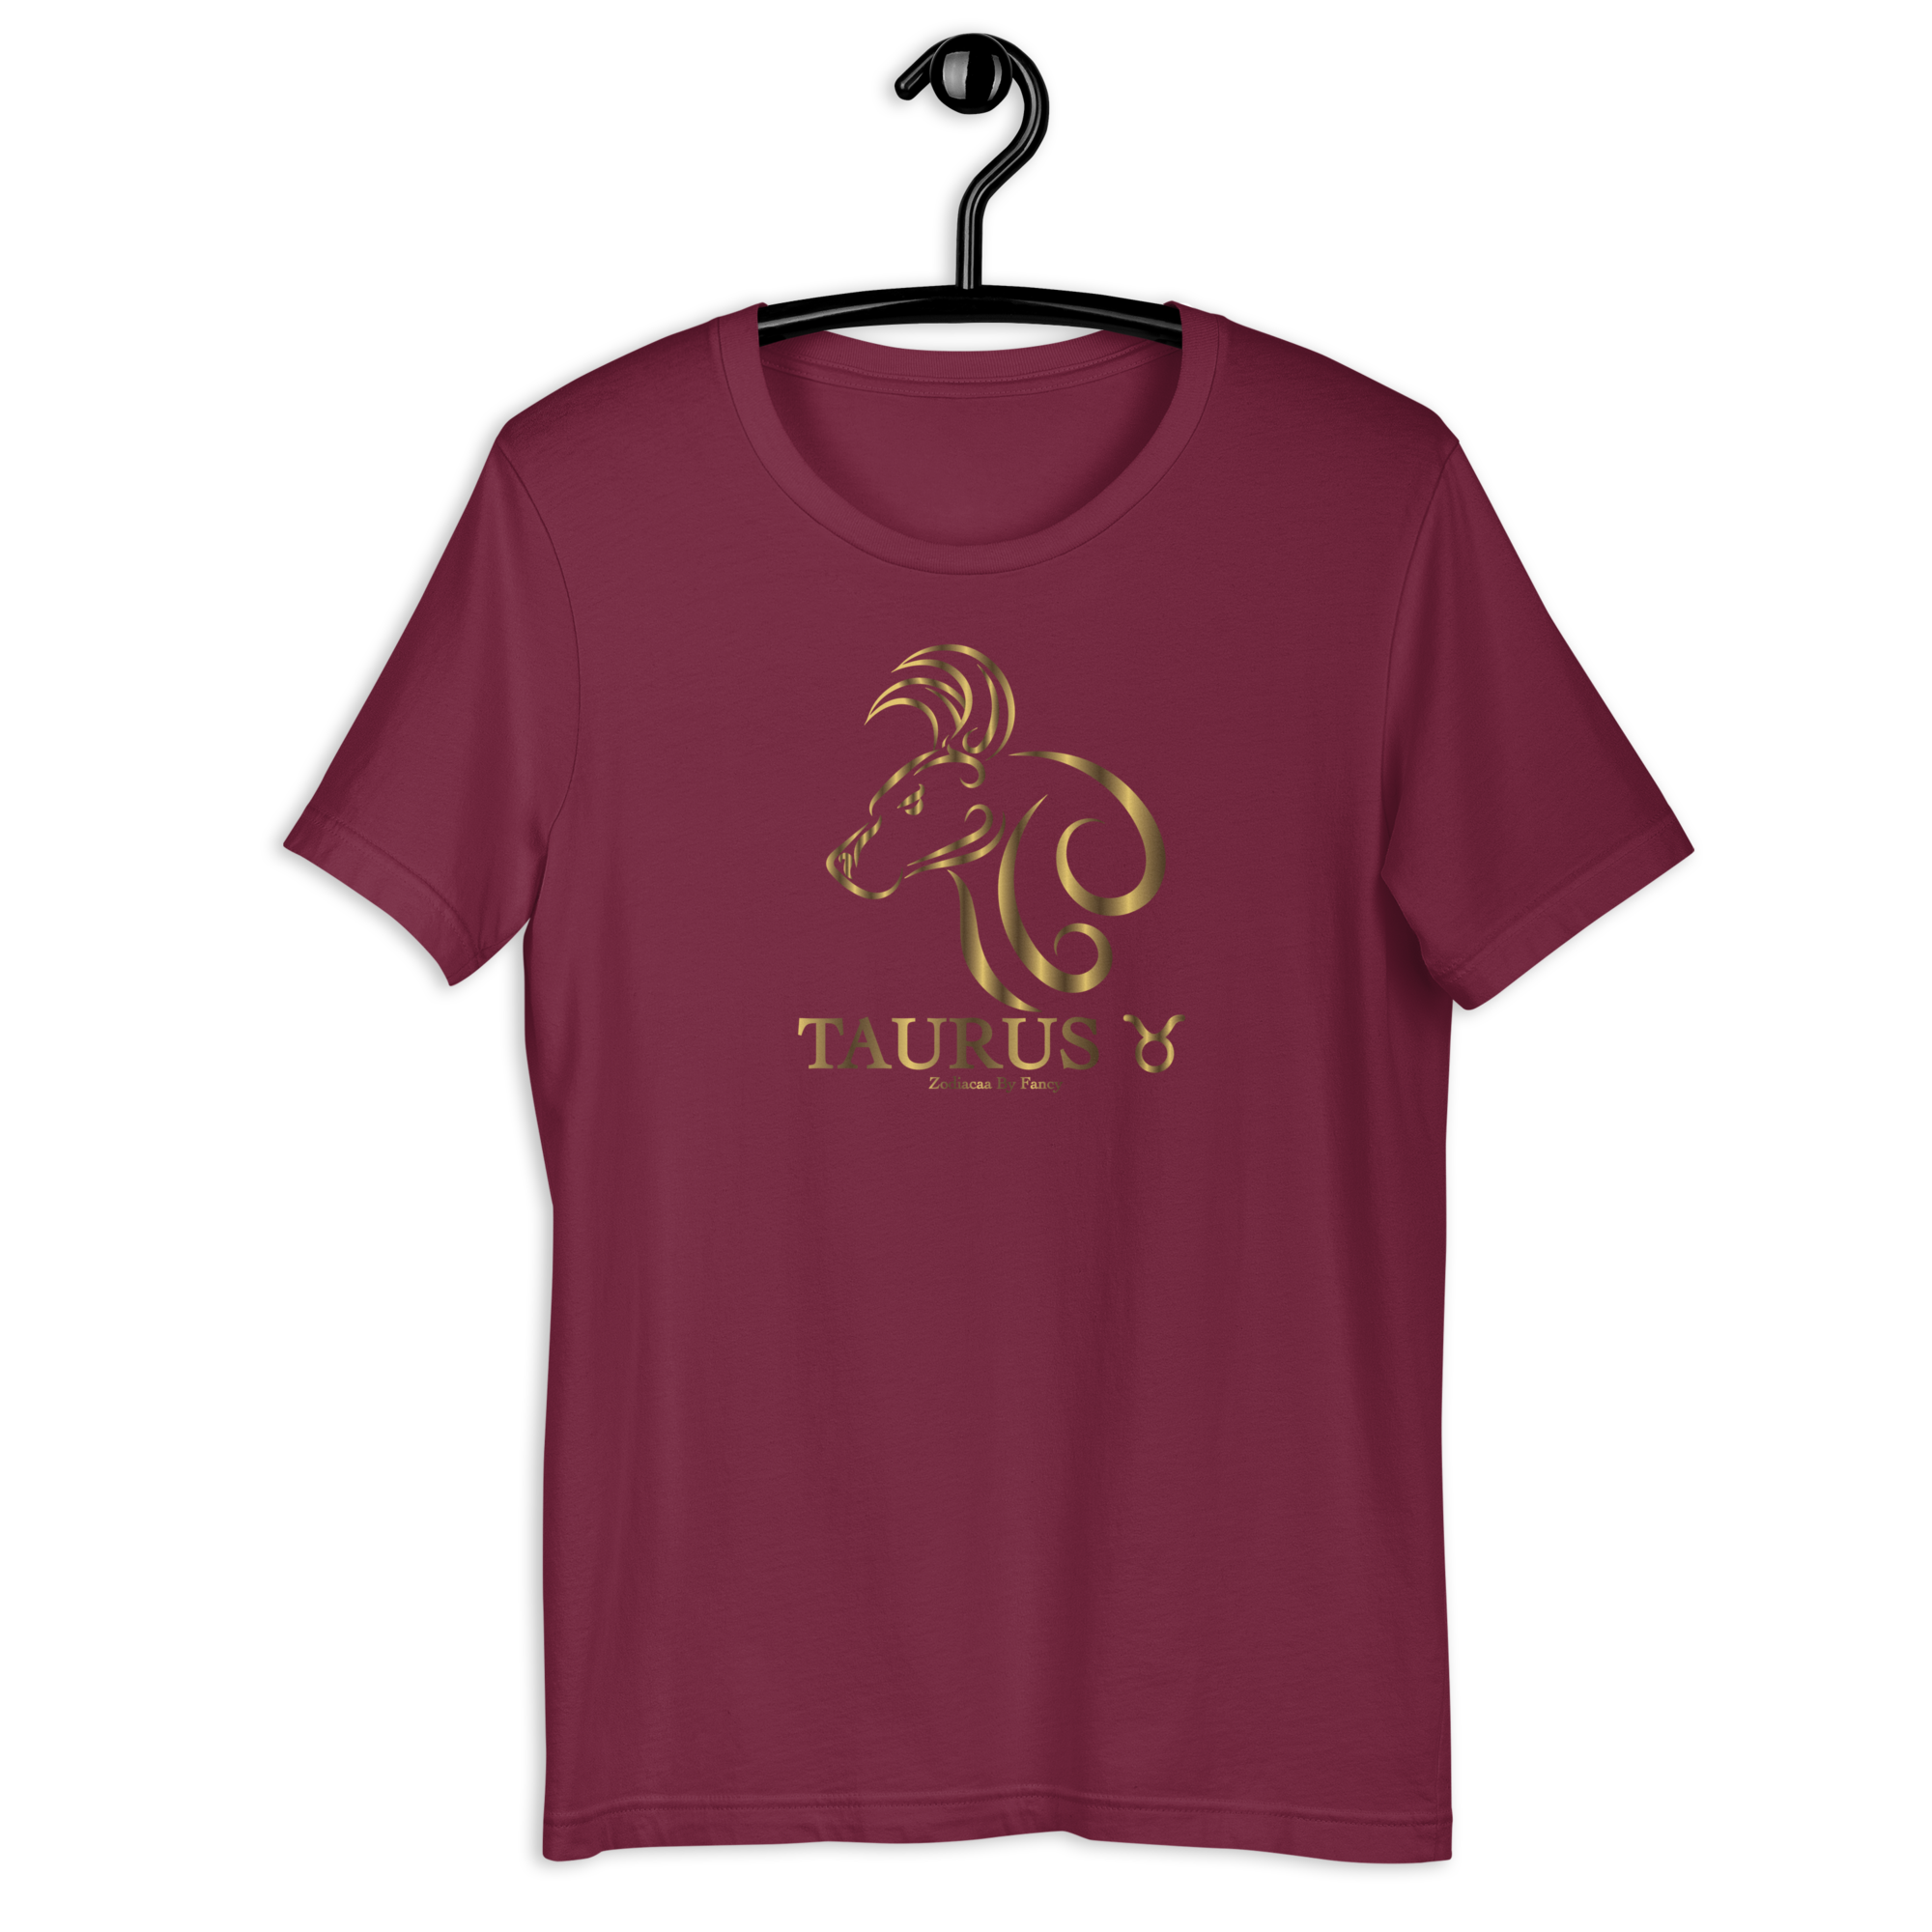 Taurus golden T-Shirt